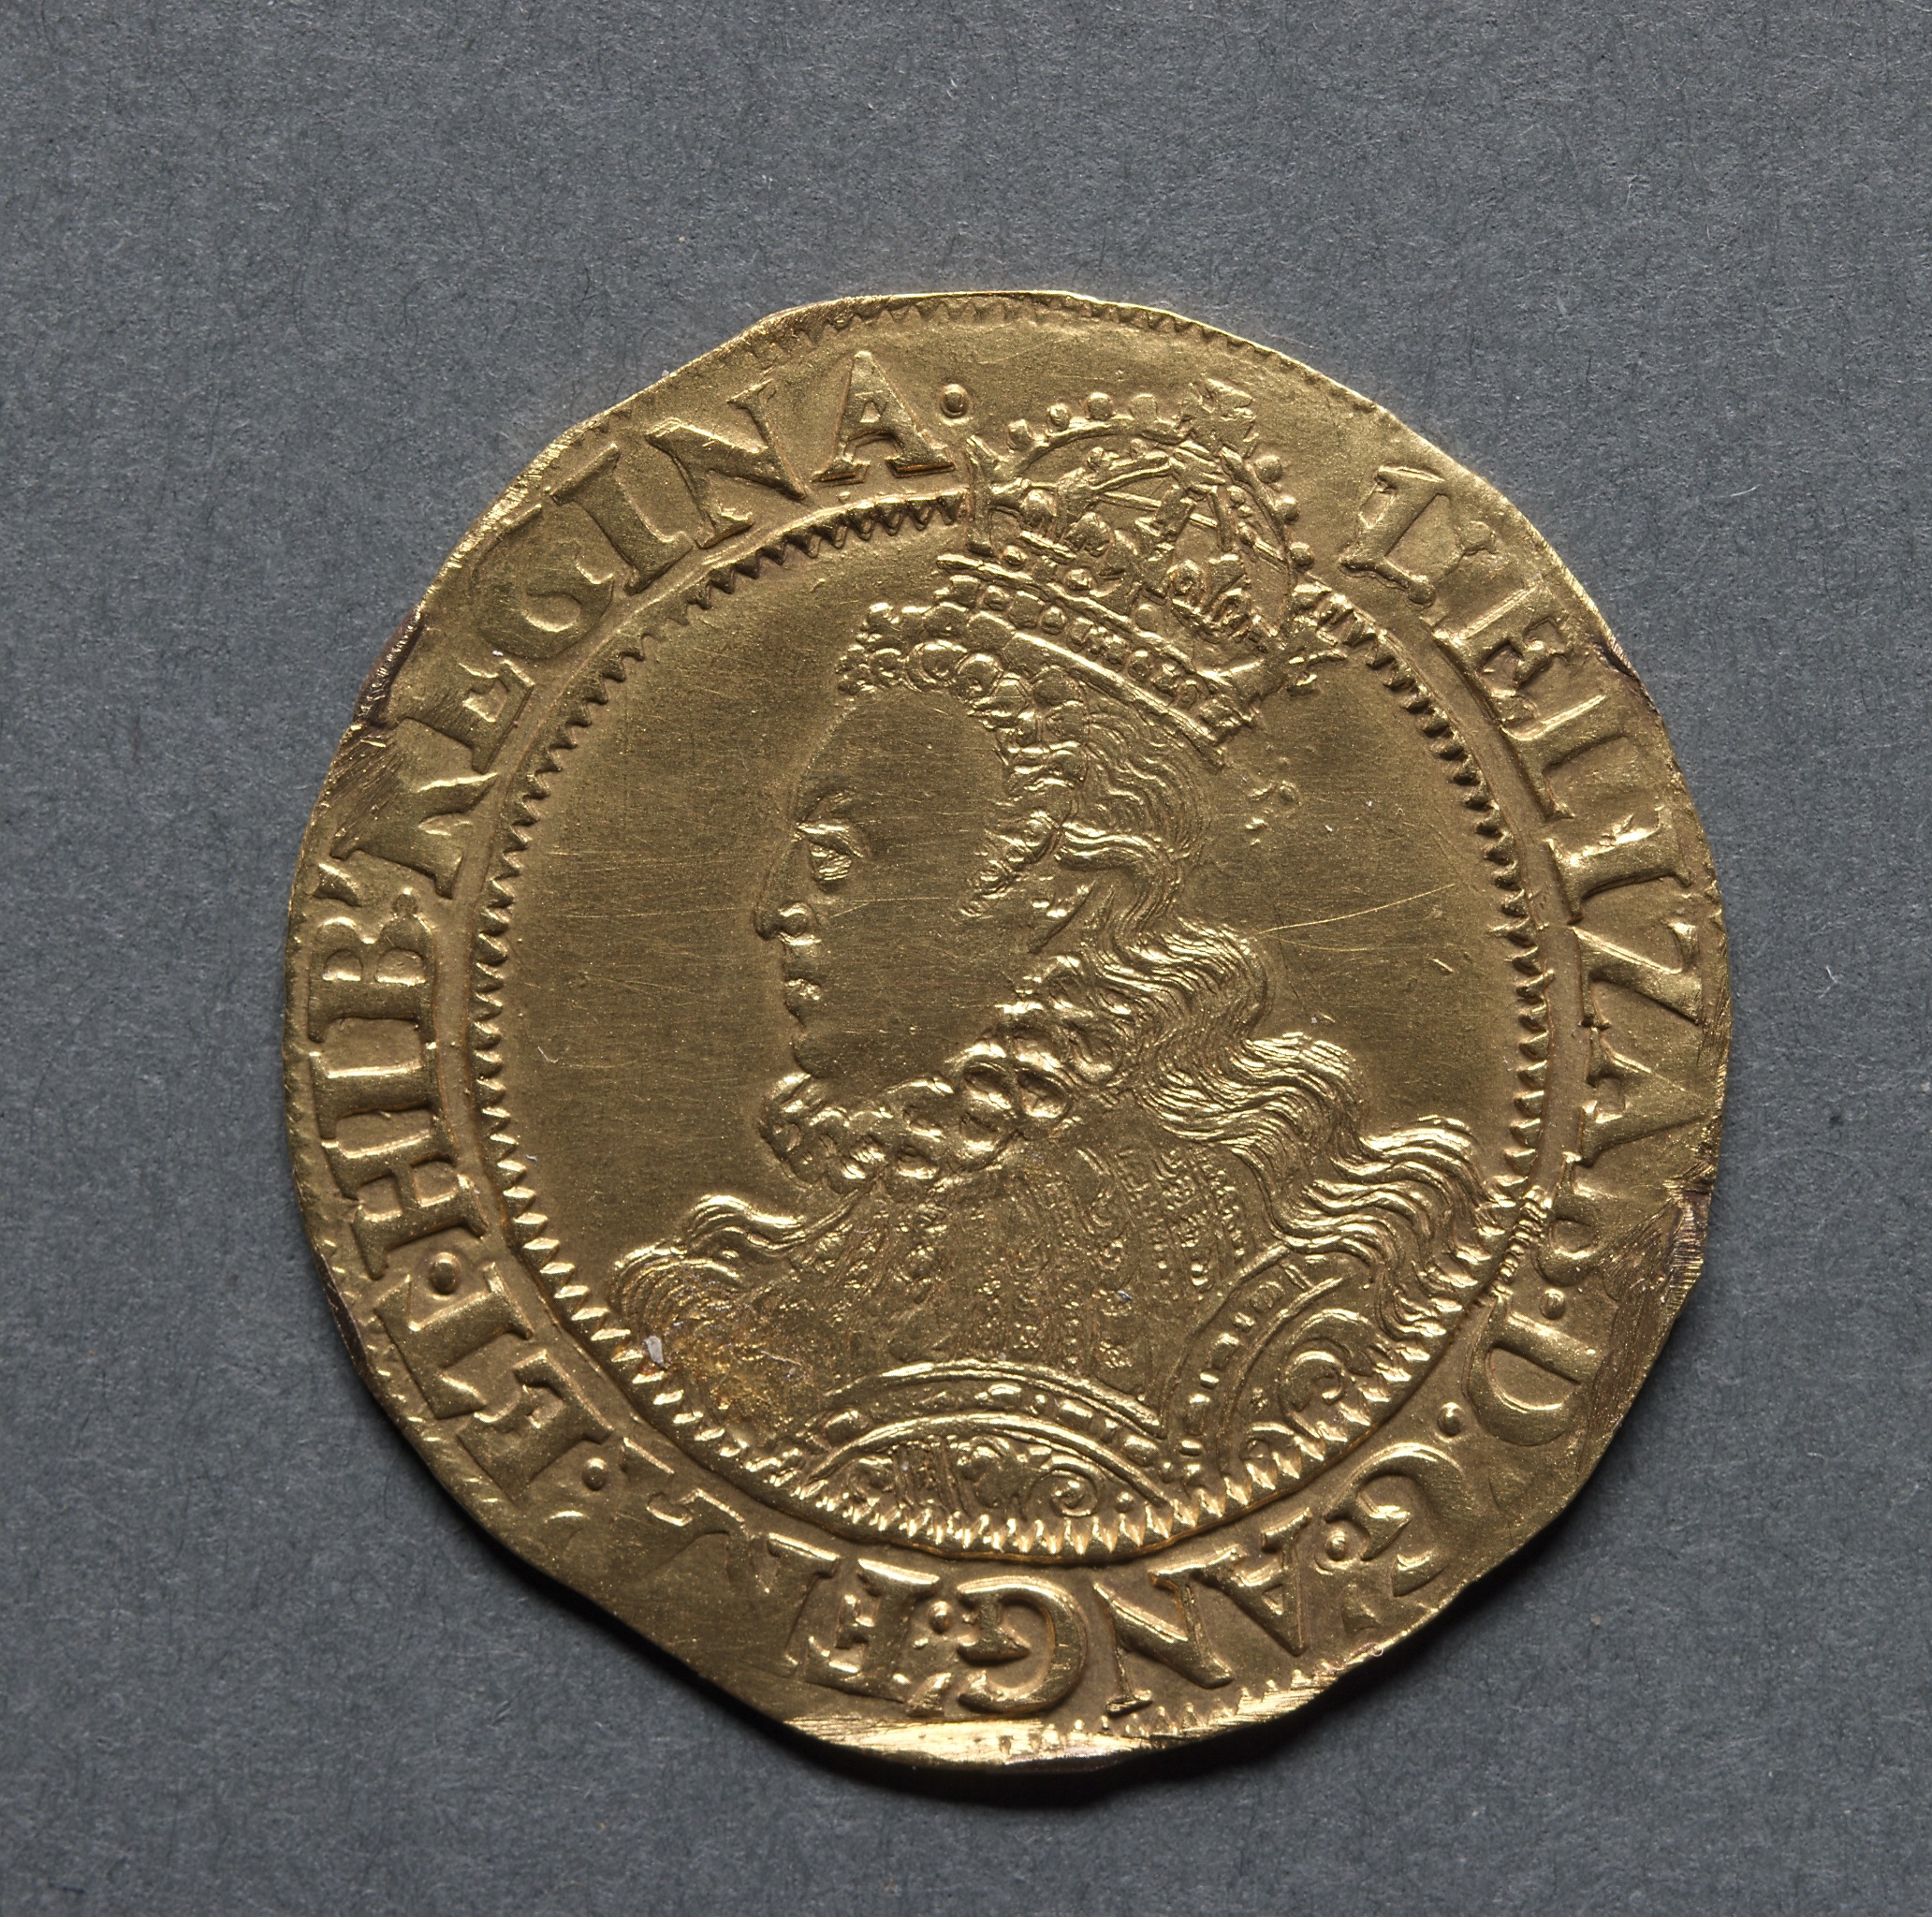 Half Pound: Elizabeth I (obverse)